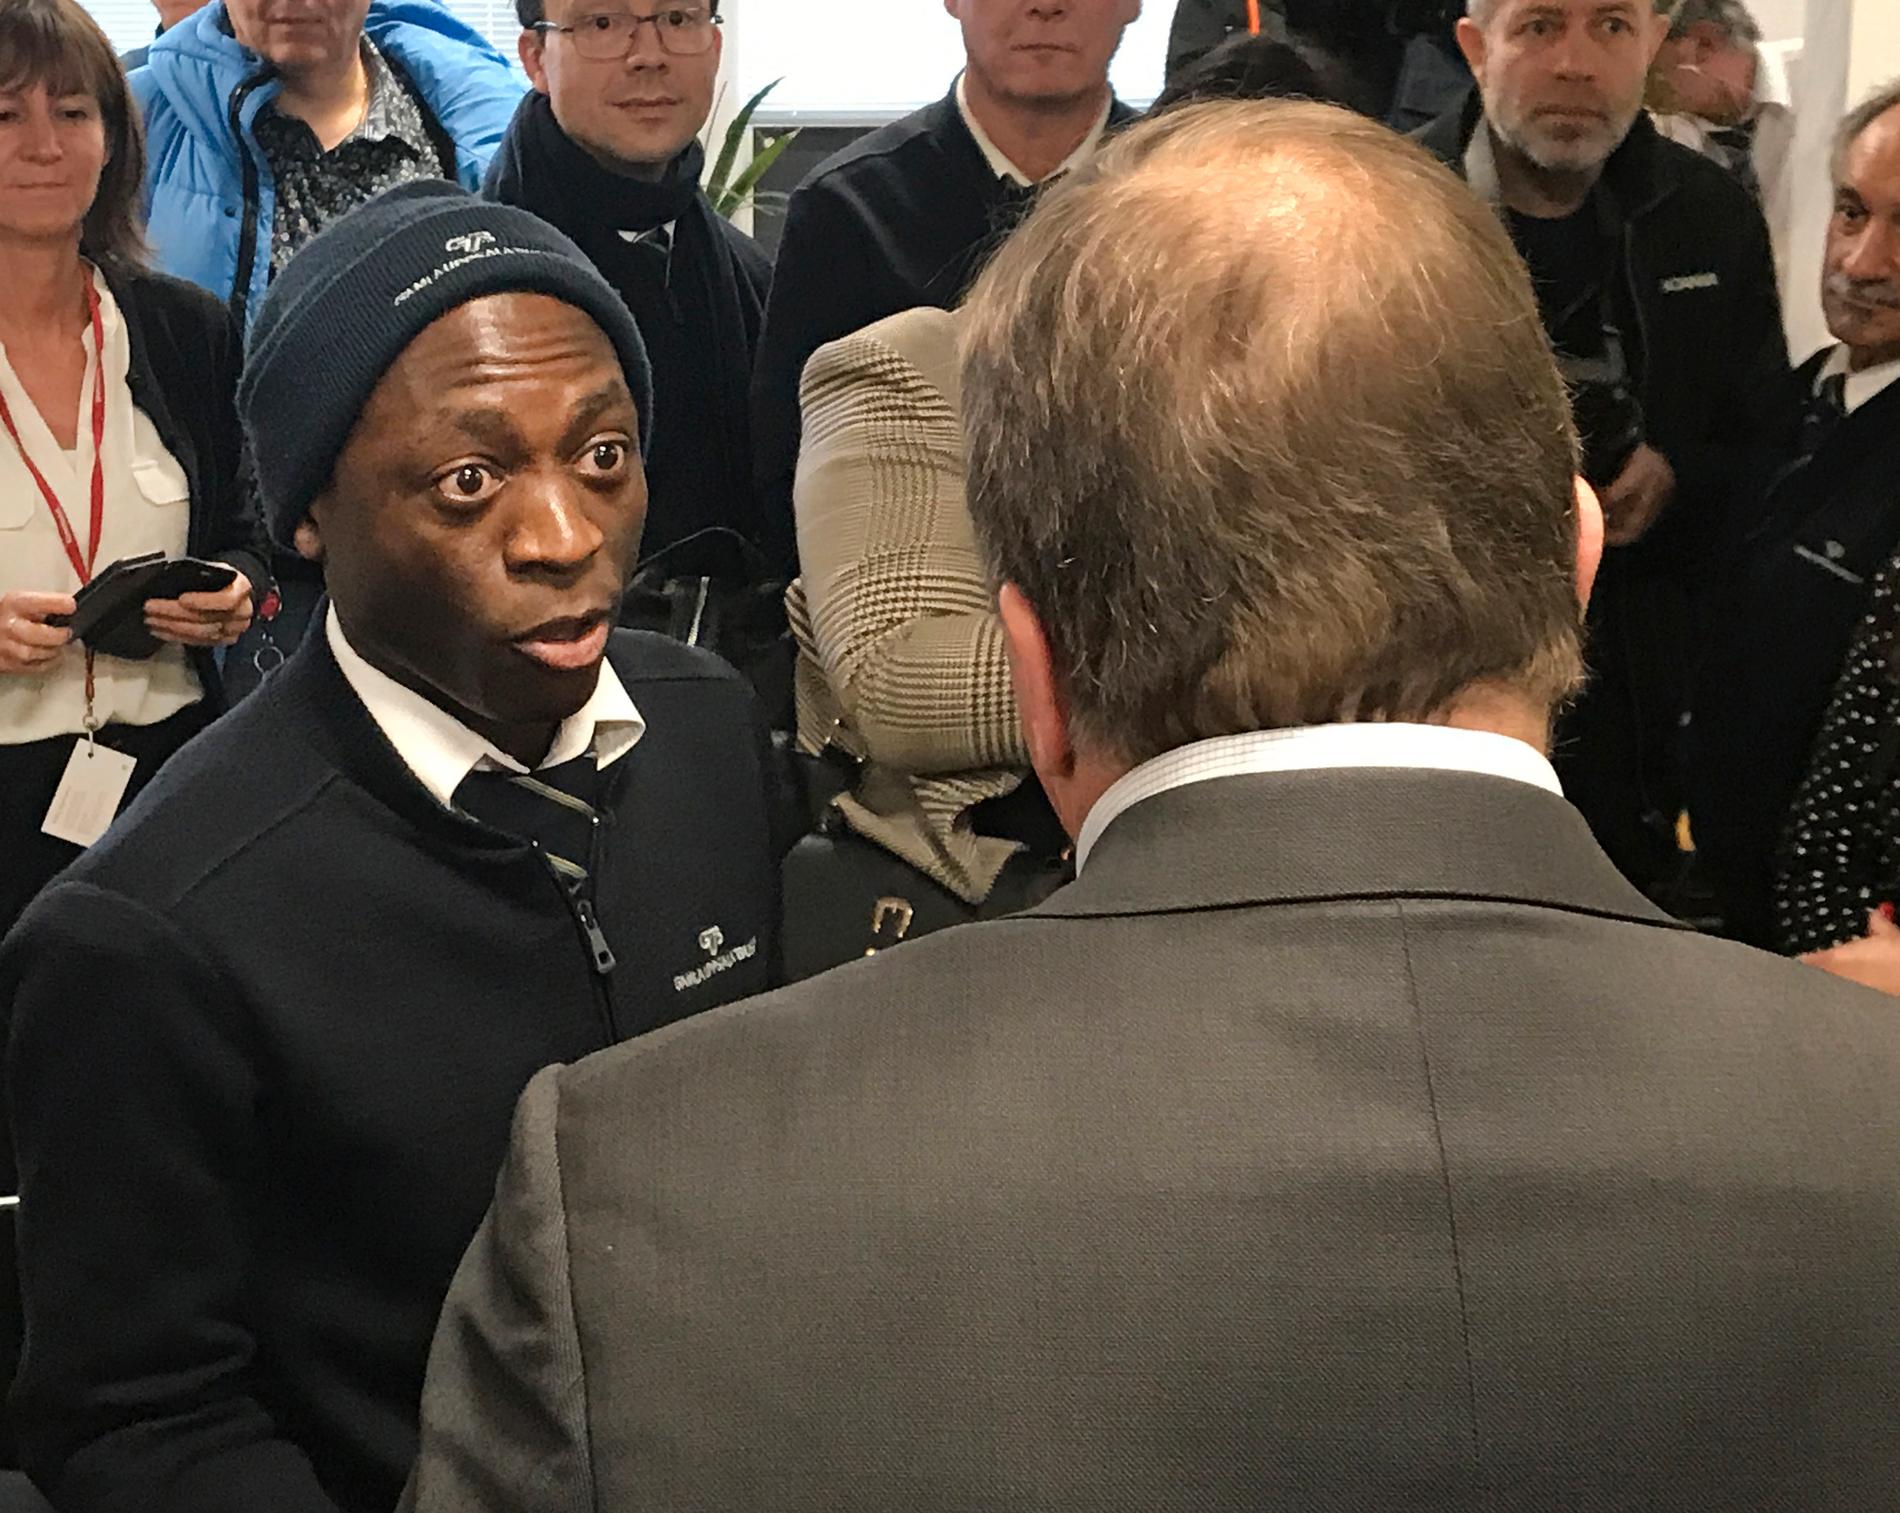 Moses Kigundu, bussförare i Uppsala, frågar statsministern om varför det inte blir några kännbara konsekvenser för dem som angriper bussförare.